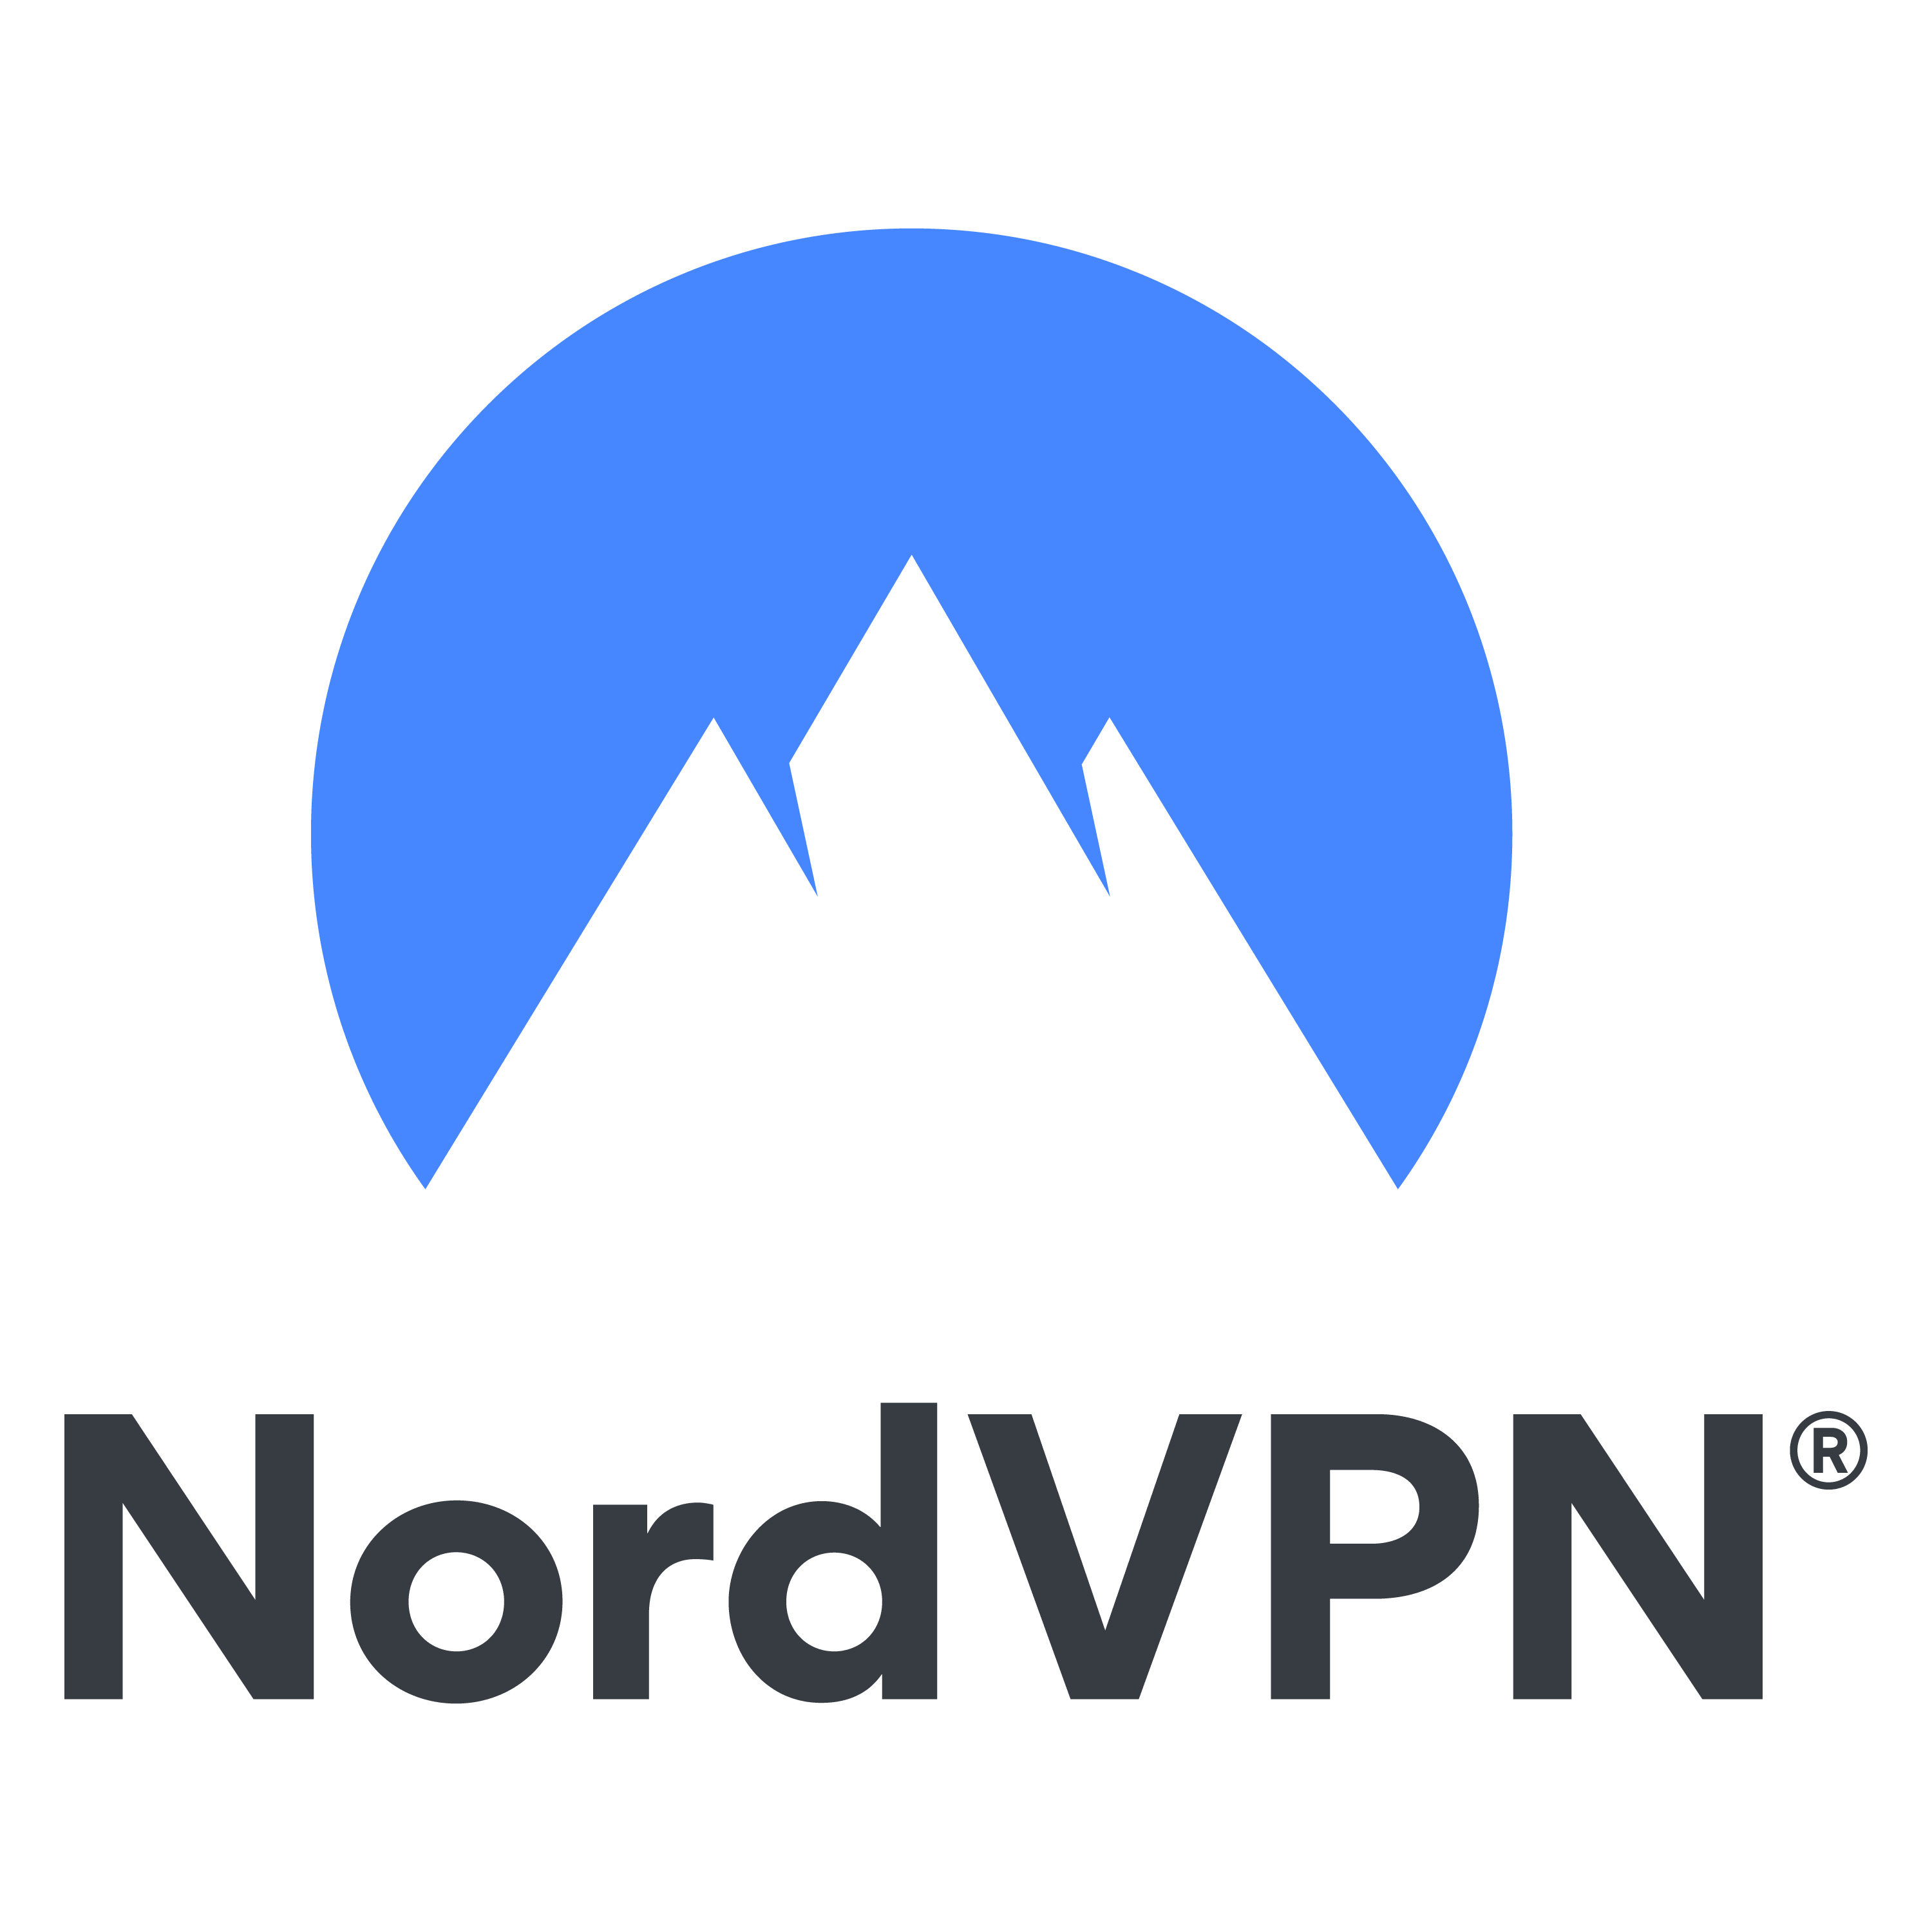 nordvpn-png-logo-large